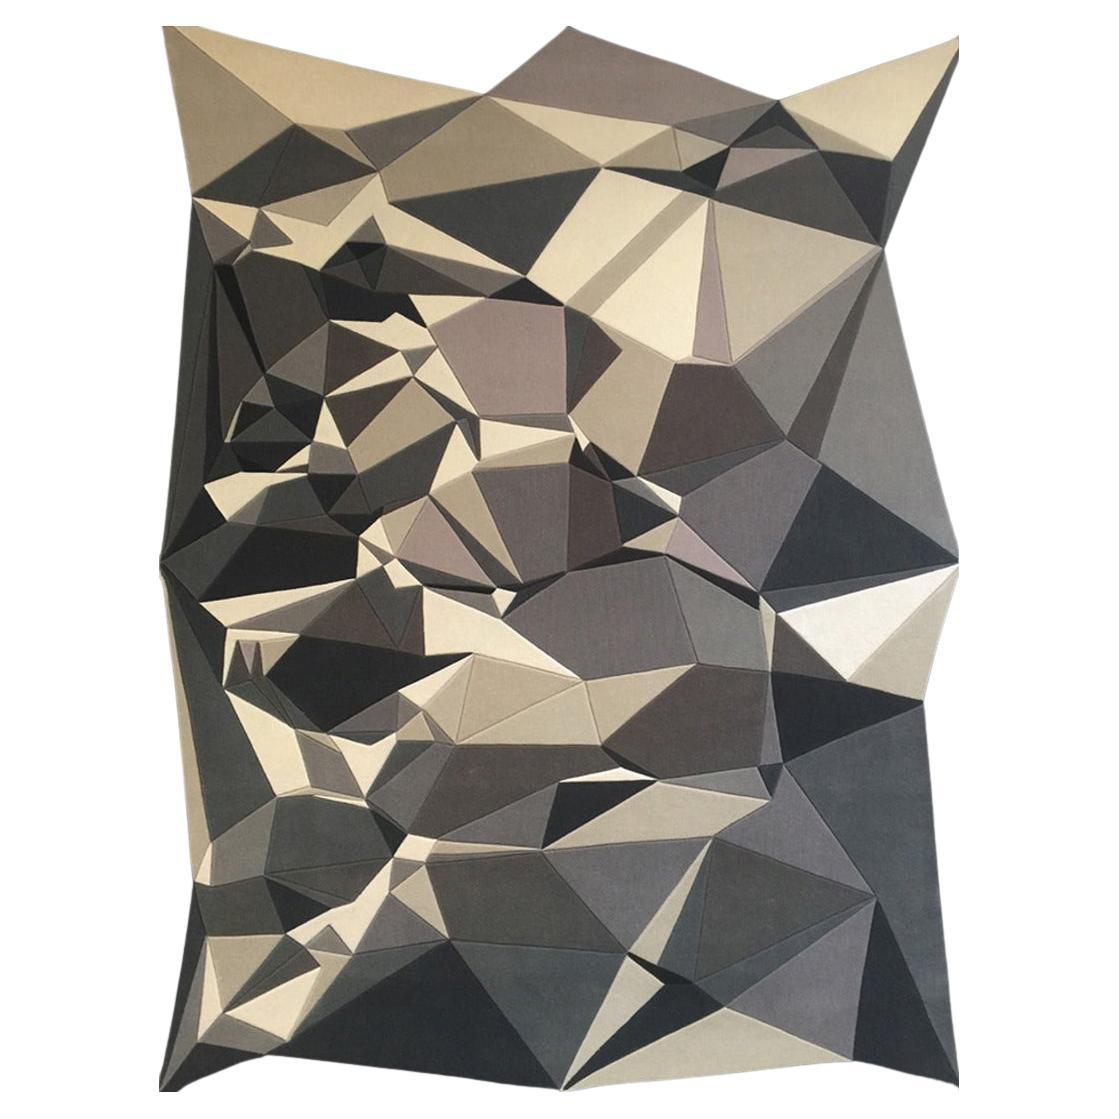 Utilisant des formes triangulées dans sa composition, ce motif de type Origami utilise de manière experte des couleurs audacieuses sculptées à la main pour créer des prismes ressemblant à des bijoux, de tailles variées et enchanteresses.

Erik